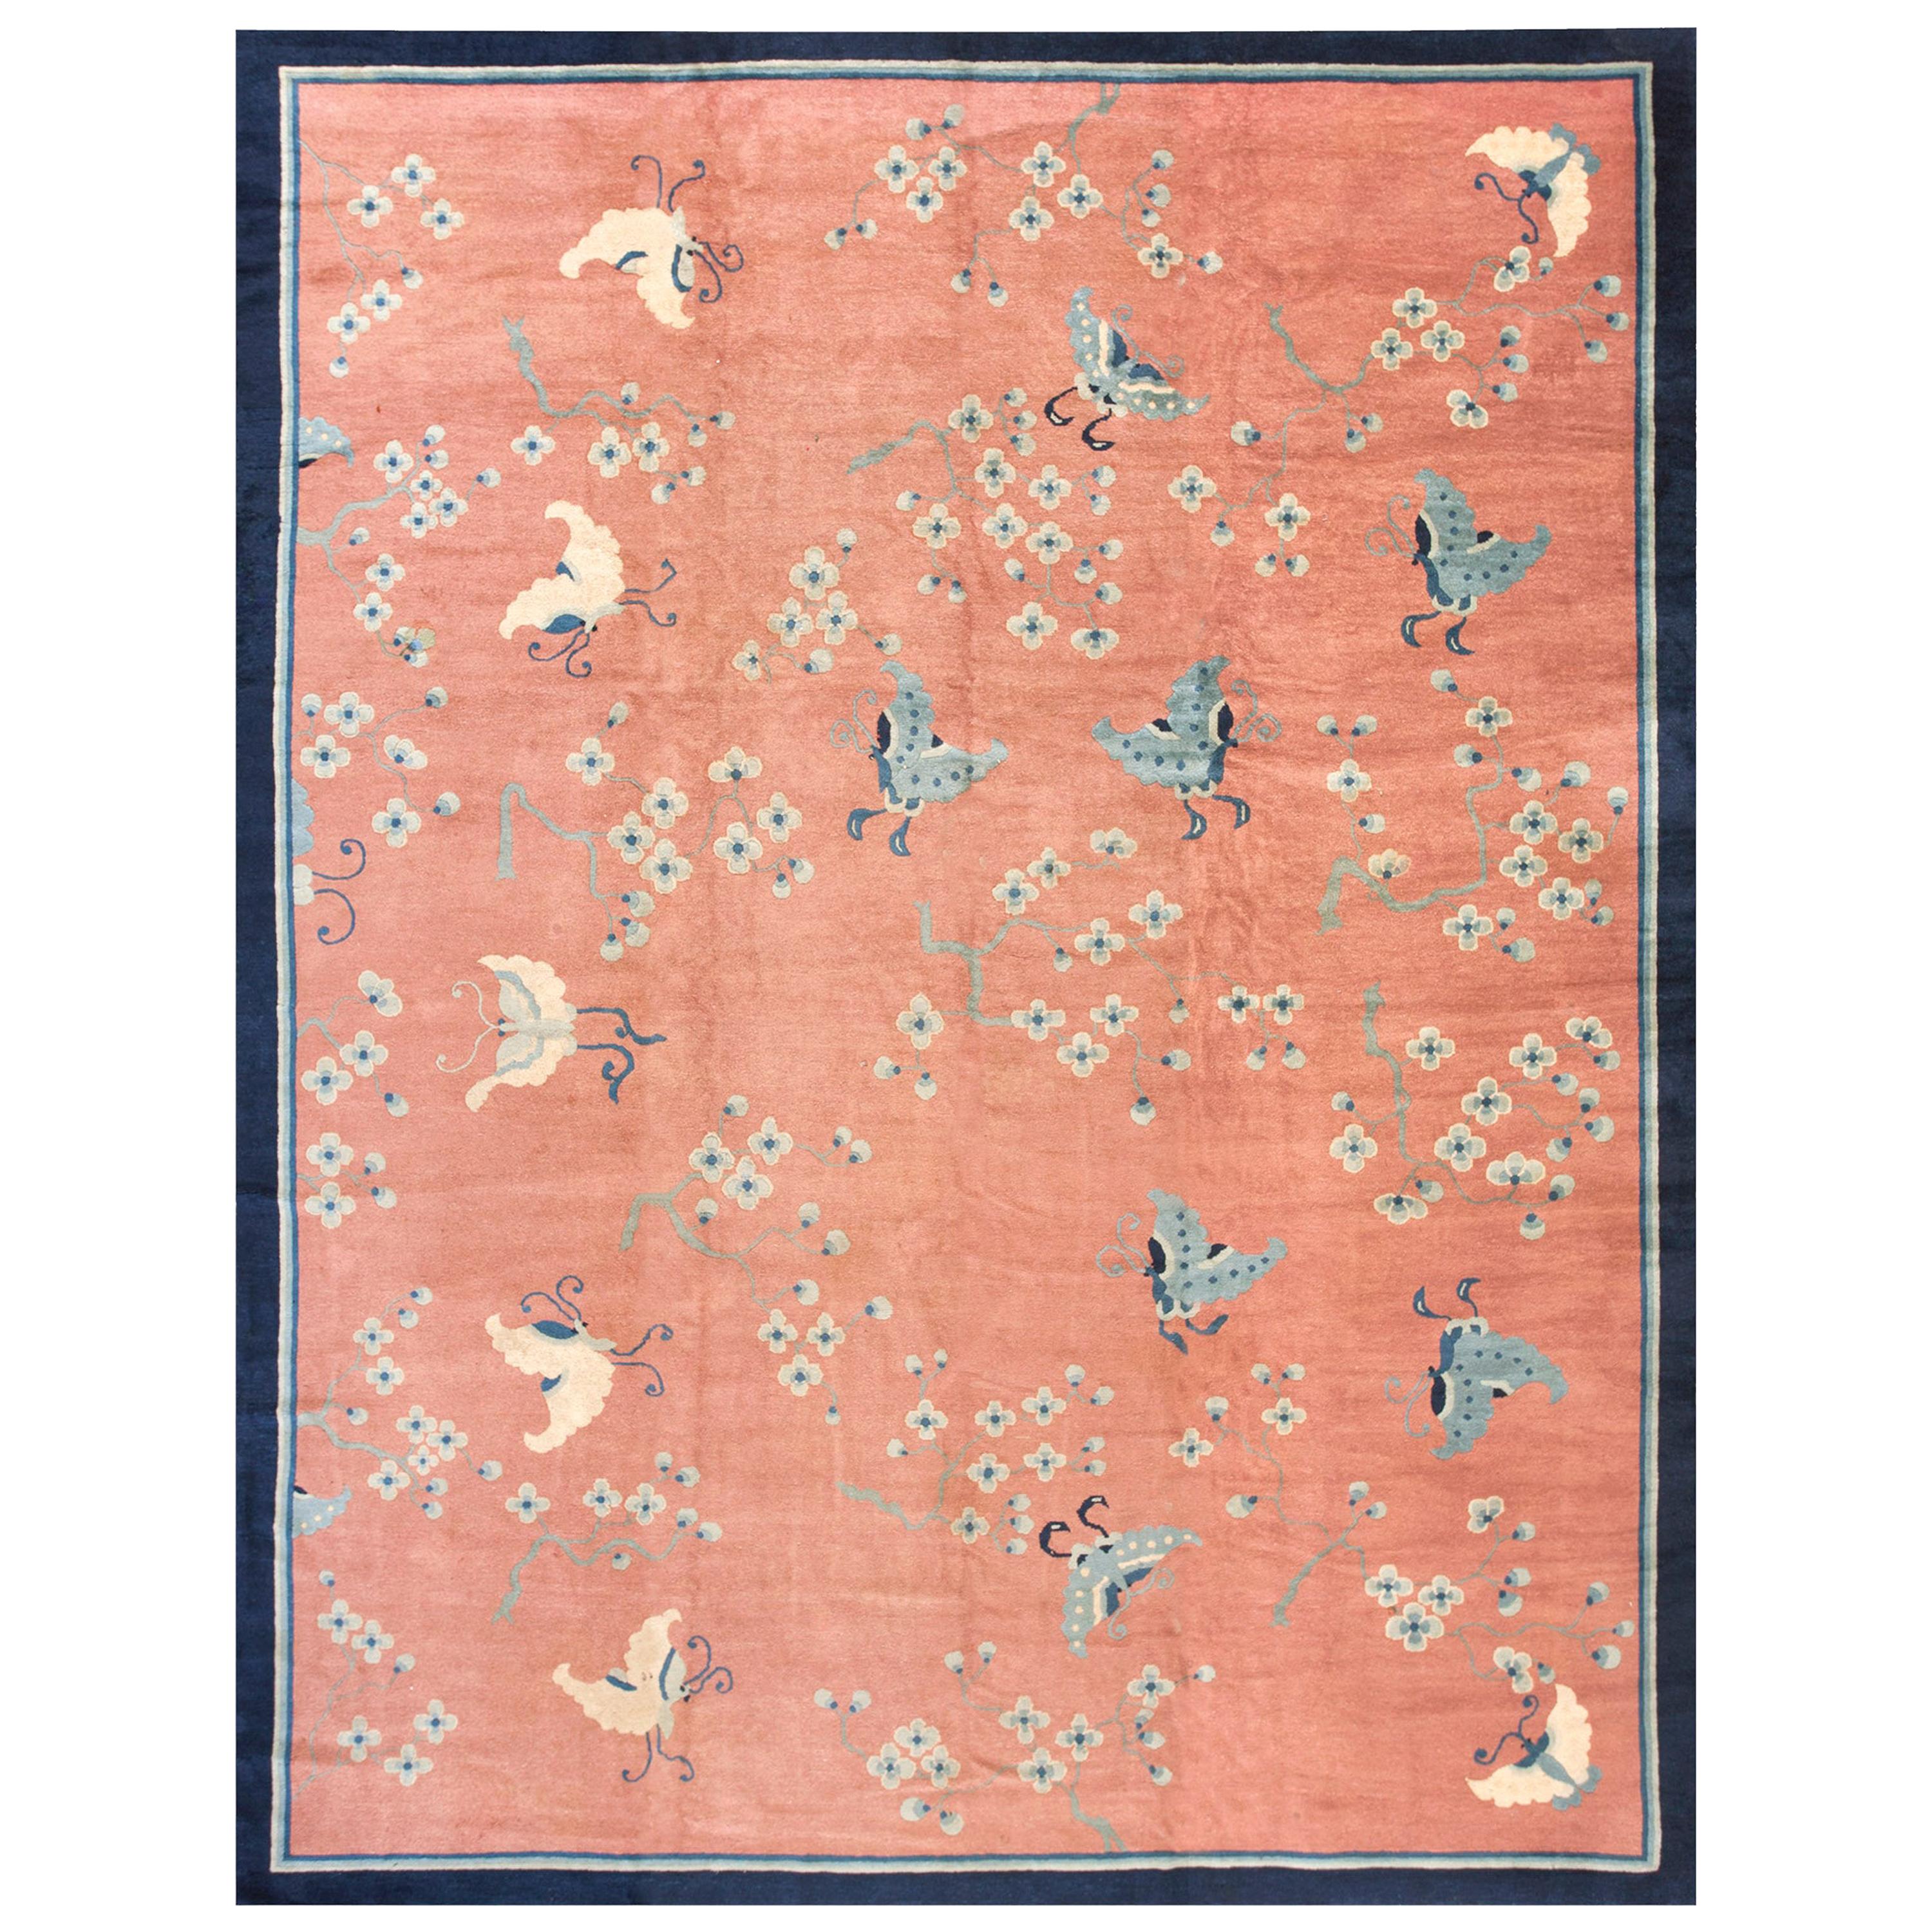 Chinesischer Peking-Teppich des 19. Jahrhunderts ( 9'3 Zoll x 11'9 Zoll - 282 x 368 cm)